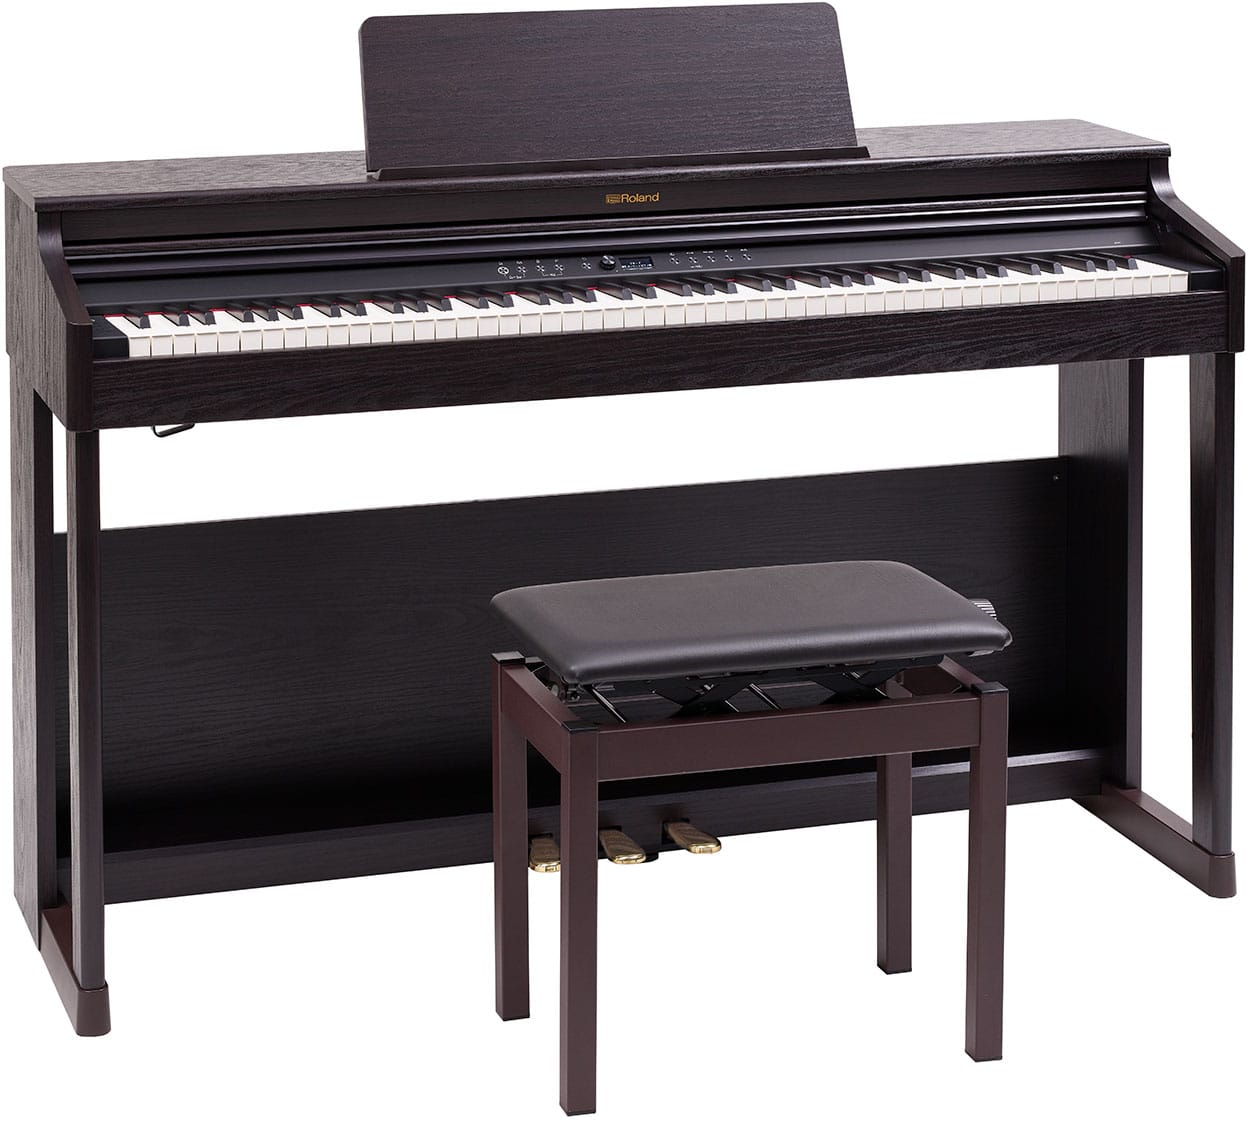 *【新製品】Roland電子ピアノ「RP701」発売決定！ 本格派のエントリーモデルとして人気のRPシリーズから「RP701」が新発売！ 人気の鍵盤・音源はそのままに高品位なサウンド・機能・デザイン性を兼ね備え新しくなりました。 *ここがオススメ！RP701の③つのポイント **①ピアノサウンド 人 […]